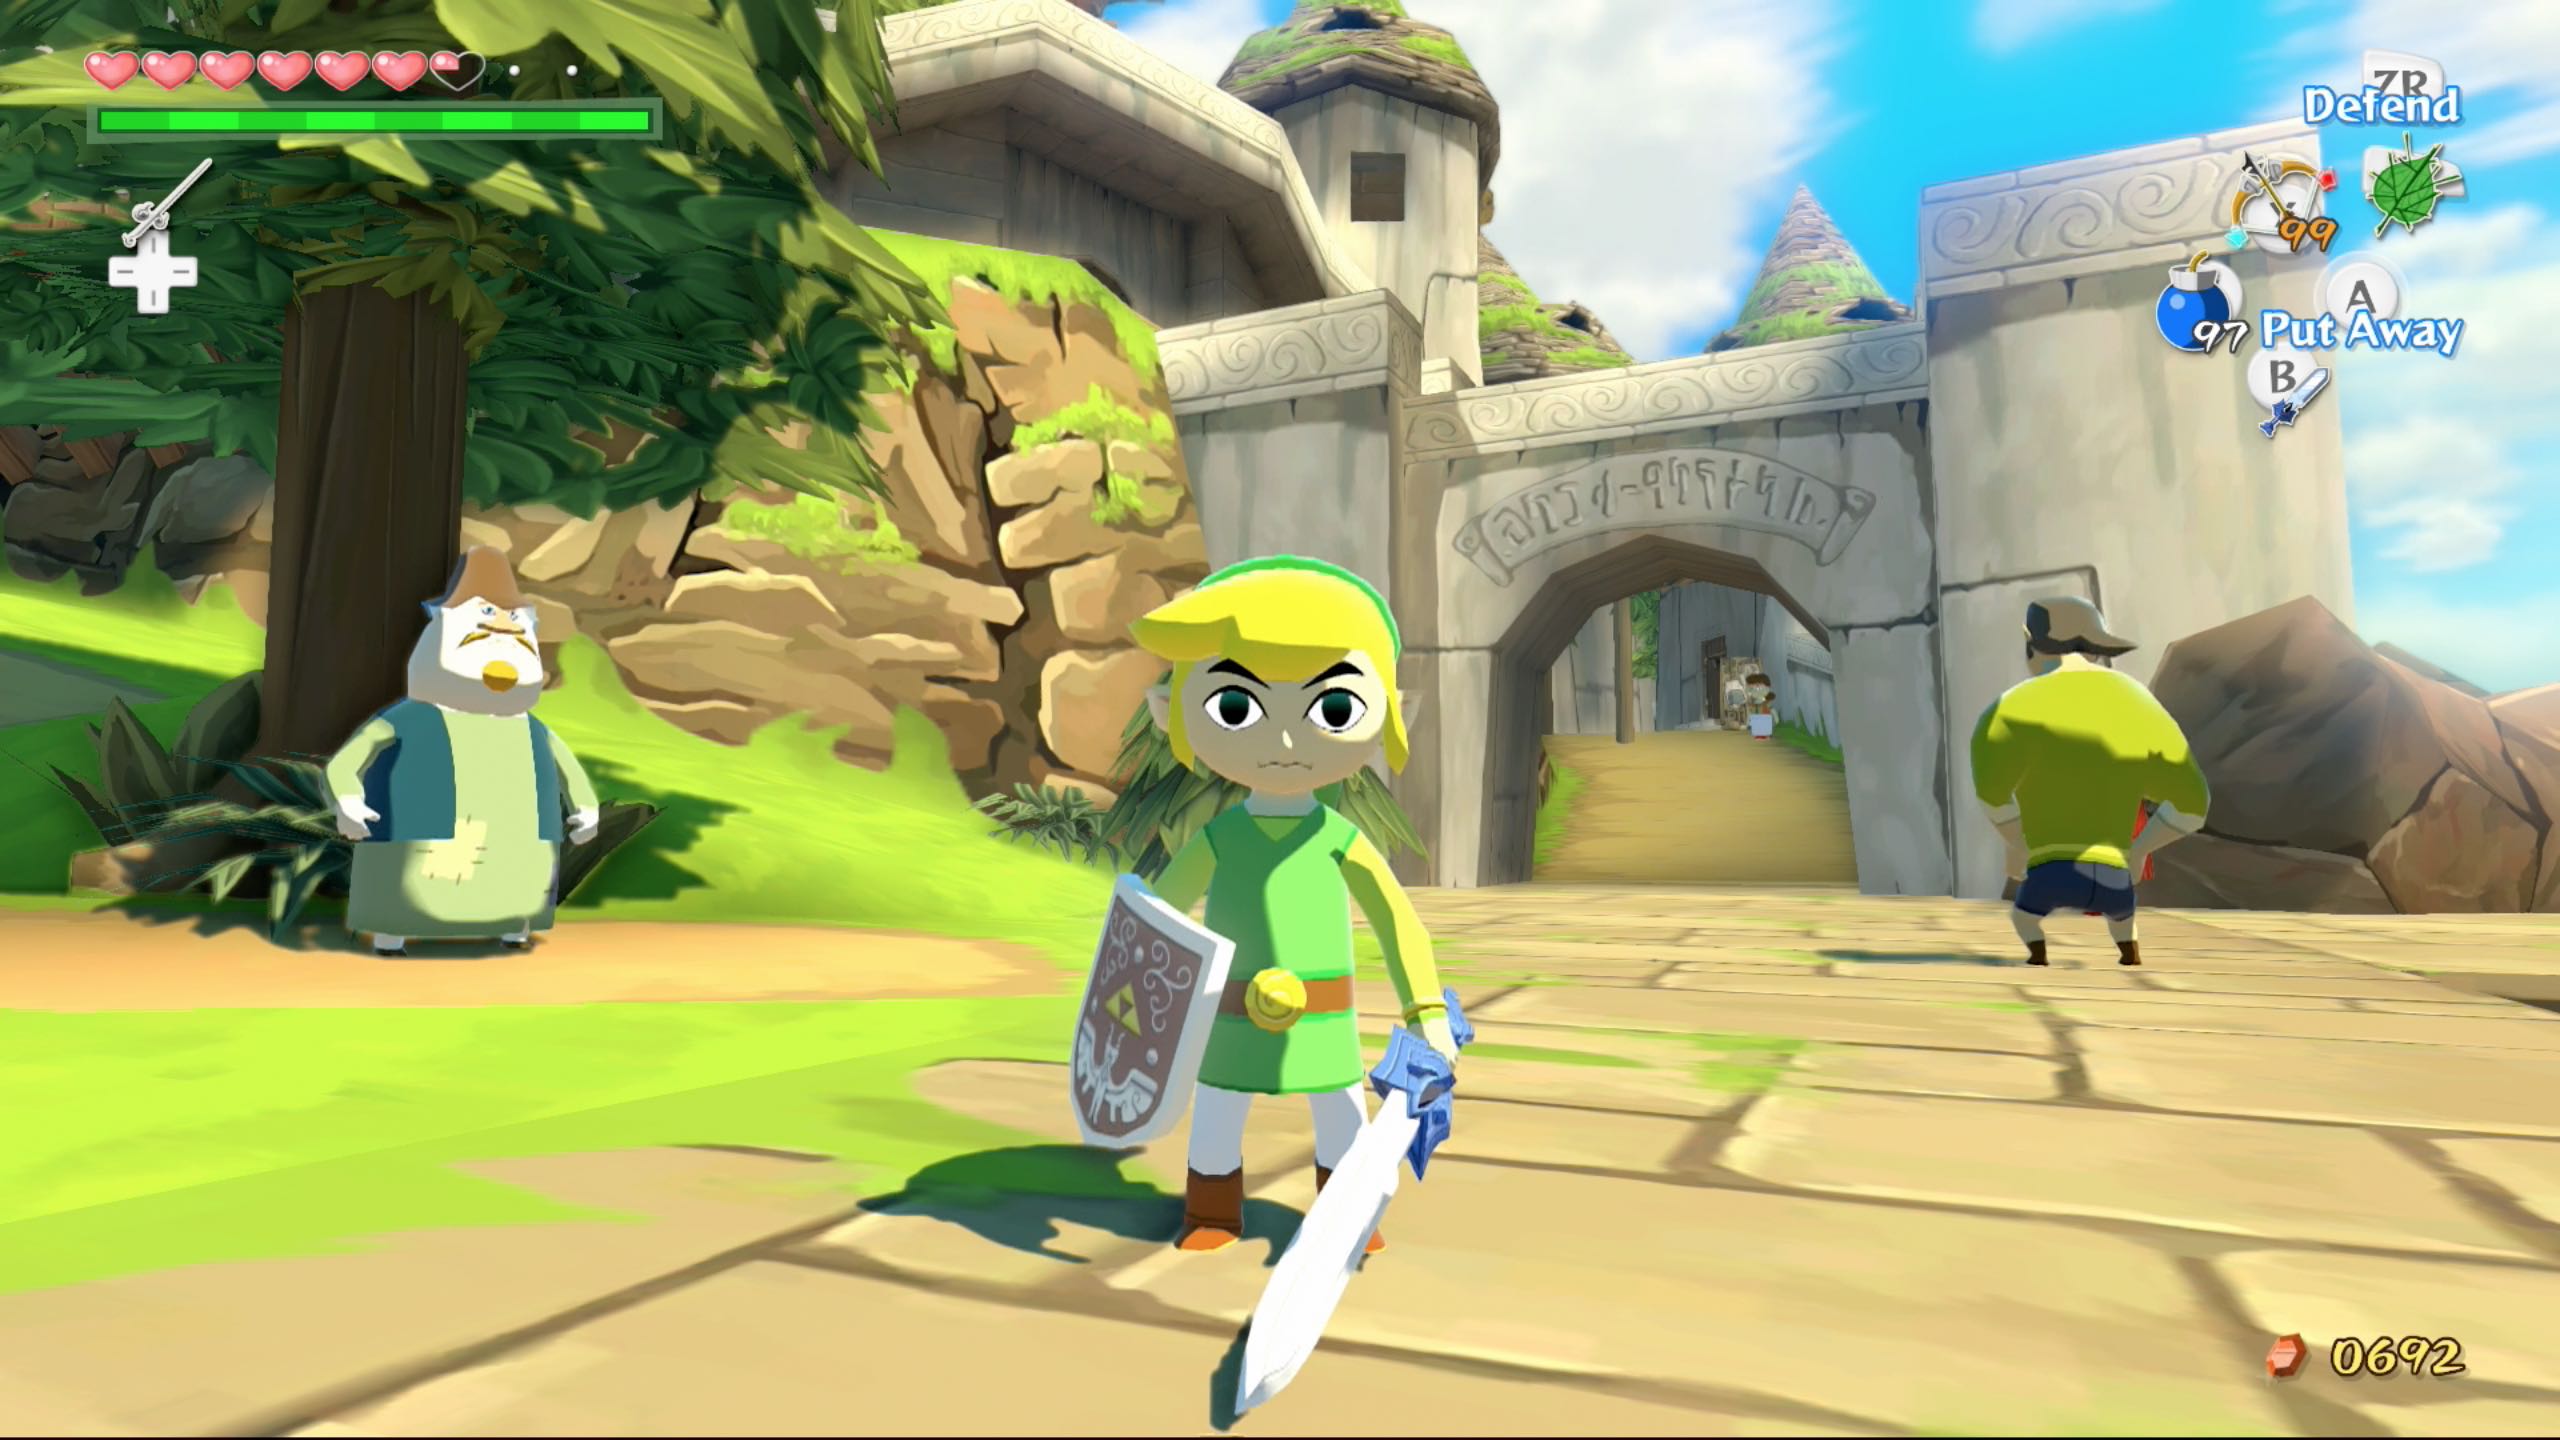 The Legend of Zelda: The Wind Waker, Nintendo GameCube, Games